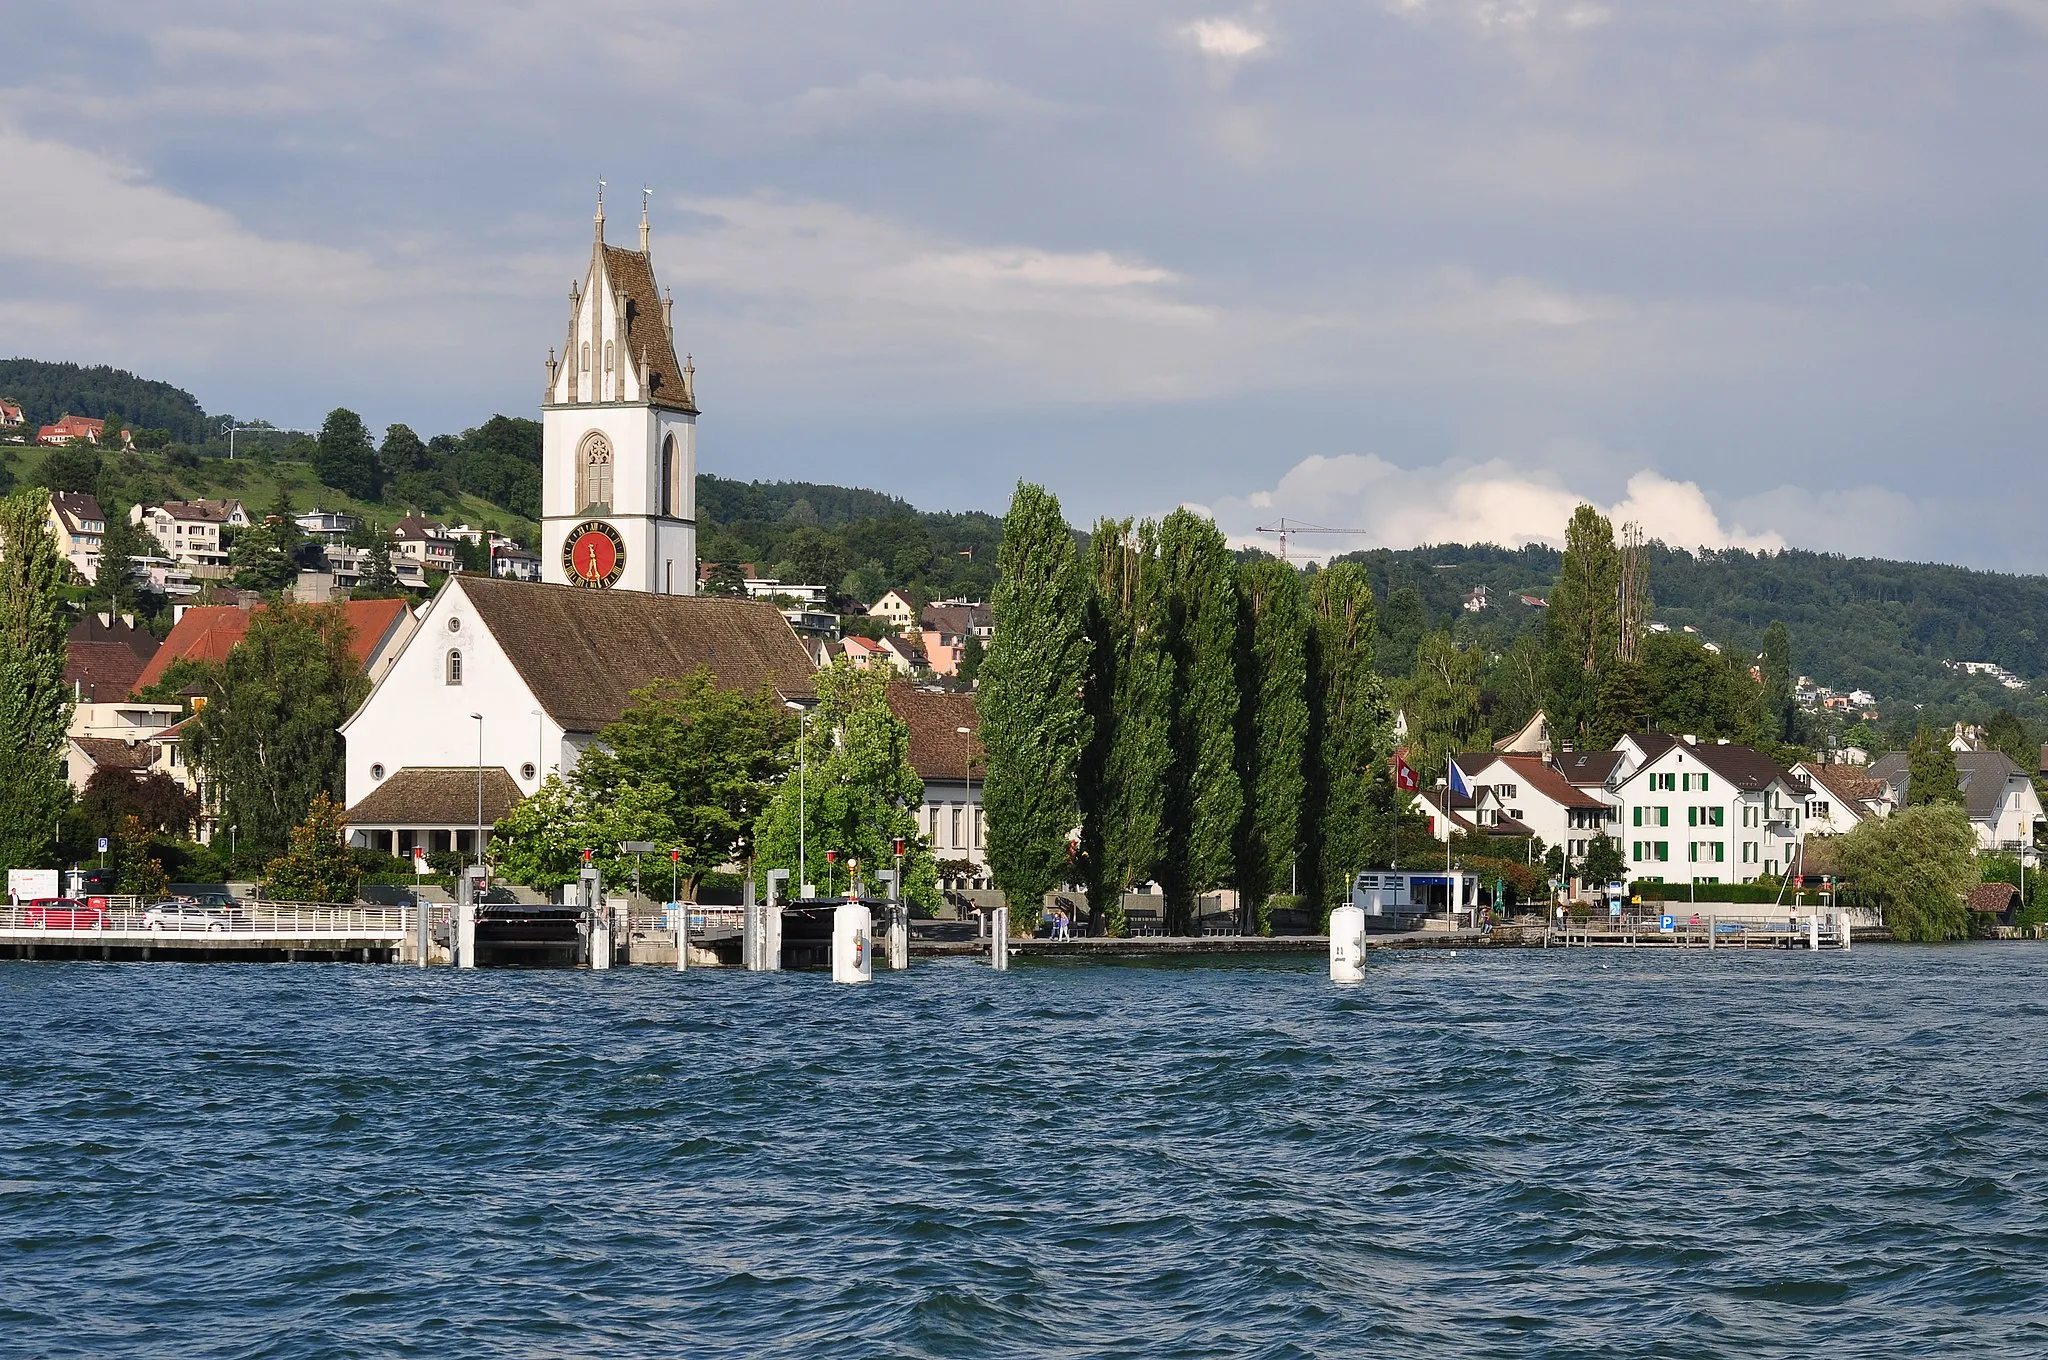 Zdjęcie: Zürich